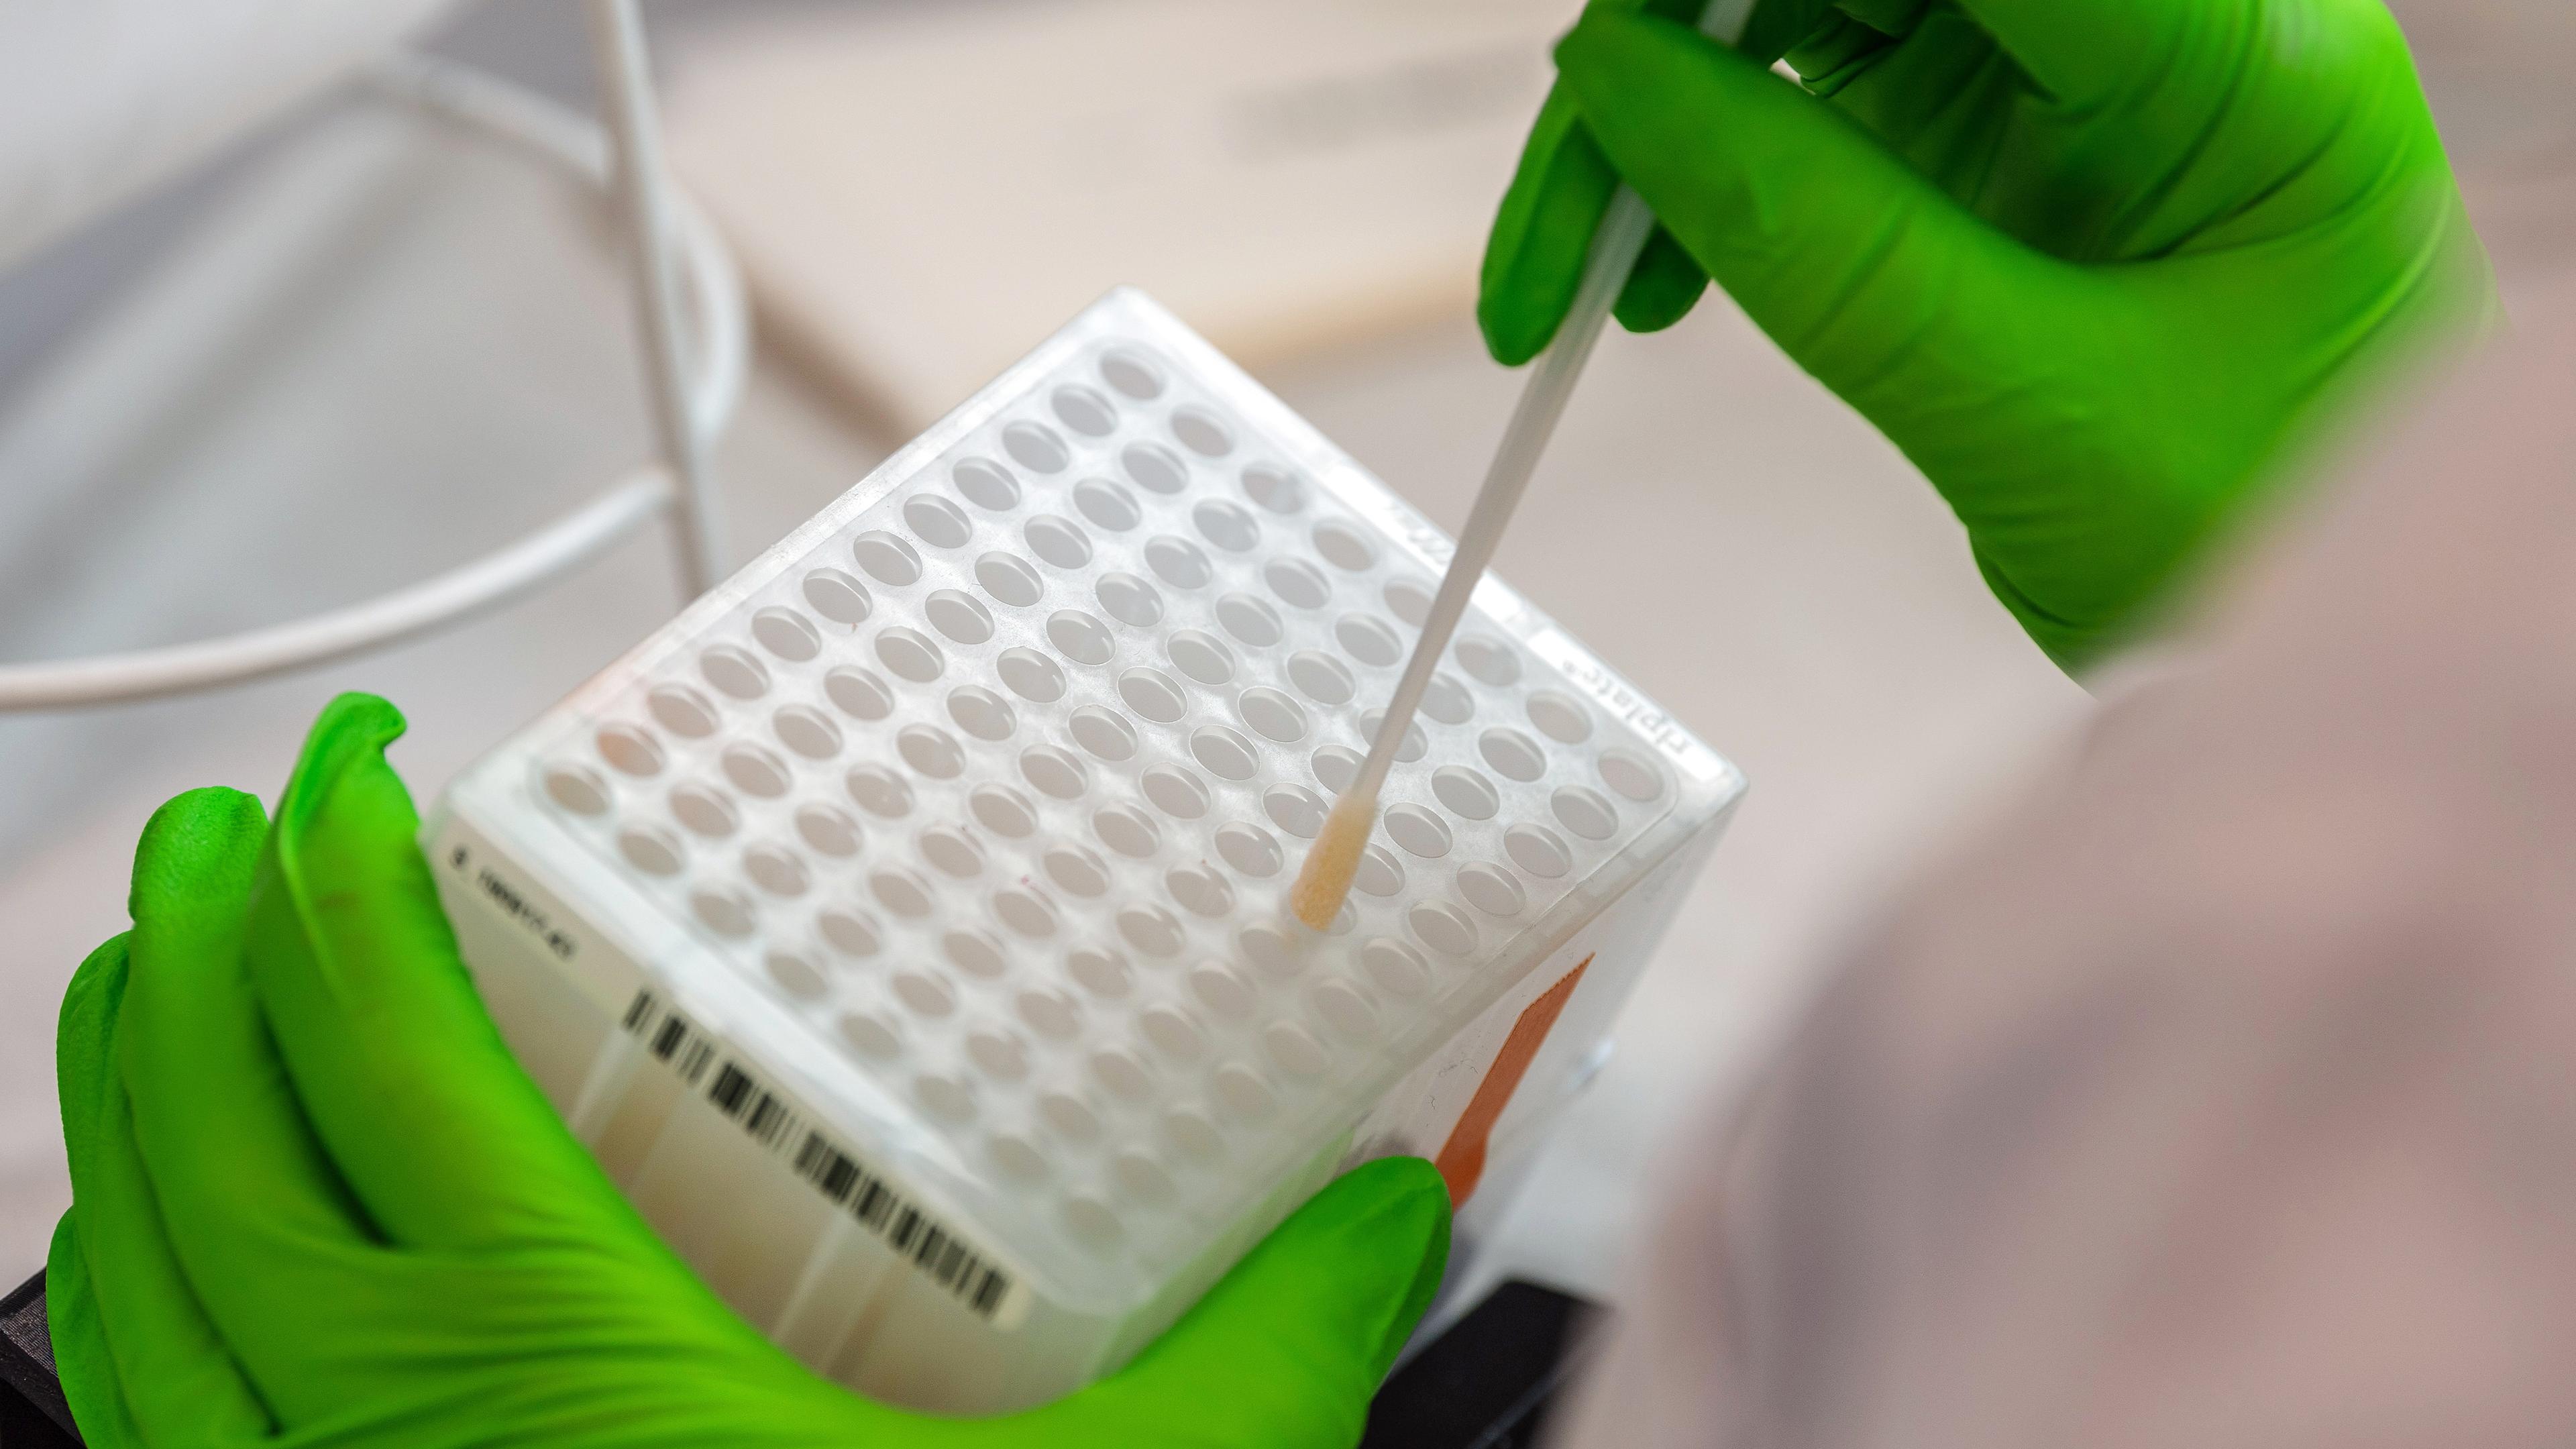 Eine mitarbeiterin im DKMS Life Science Lab arbeitet an der Einsortierung der medizinischen Wattestaebchen mit Zellen  für den Typisierungsprozess der DNA